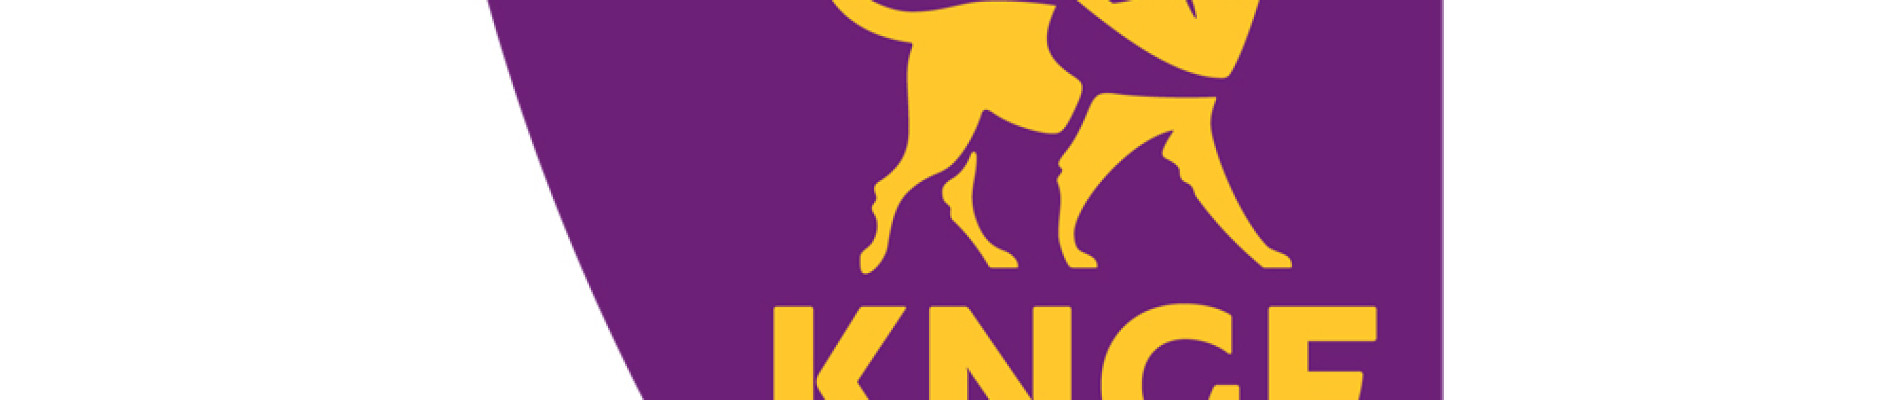 Logo KNGF Geleidehonden op paarse achtergrond